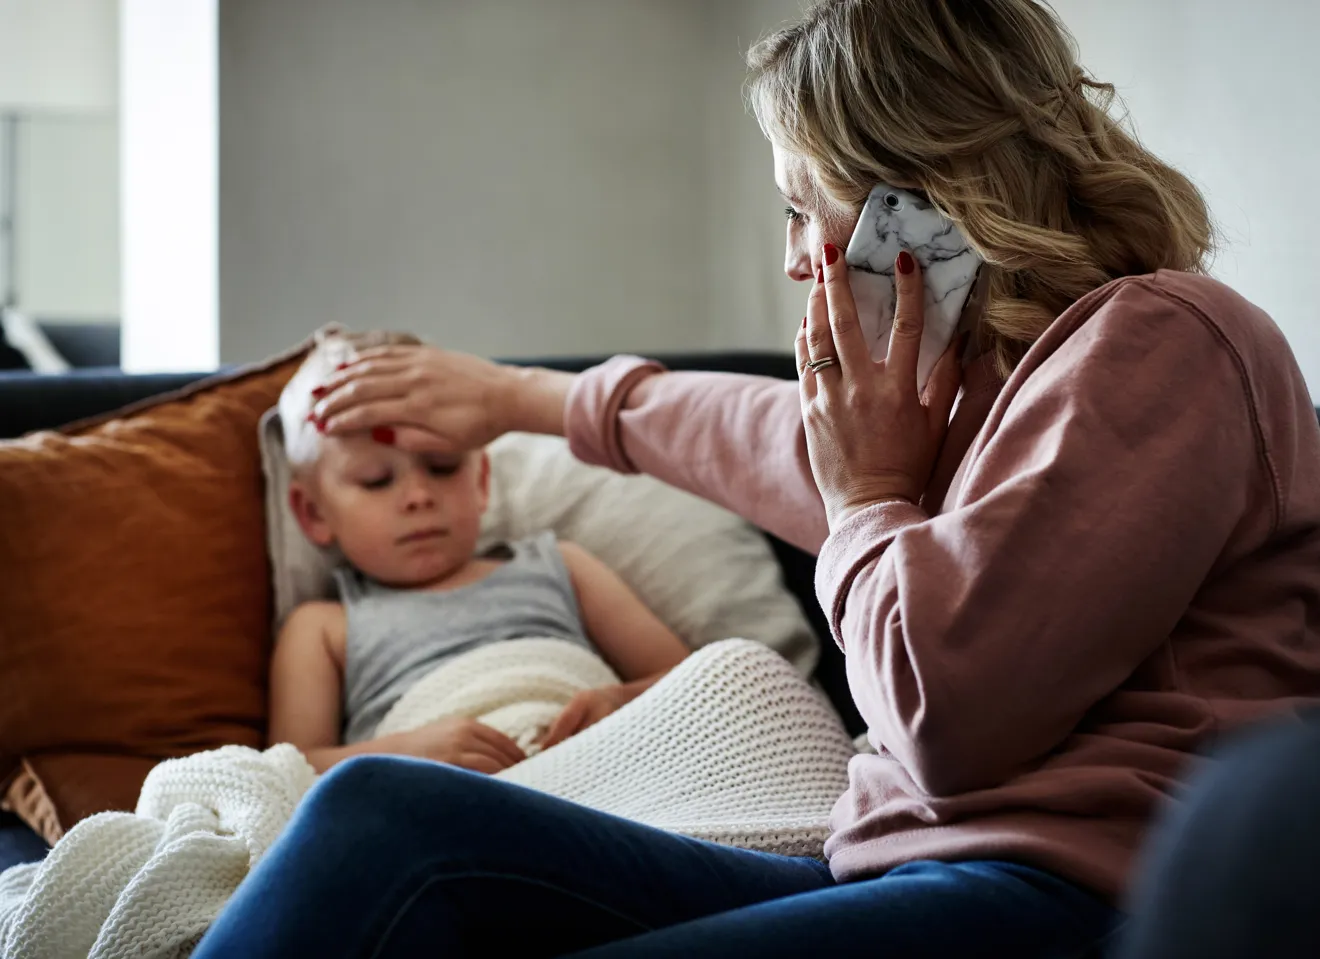 Bekymret kvinne kjenner på en gutts panne mens hun snakker i telefonen